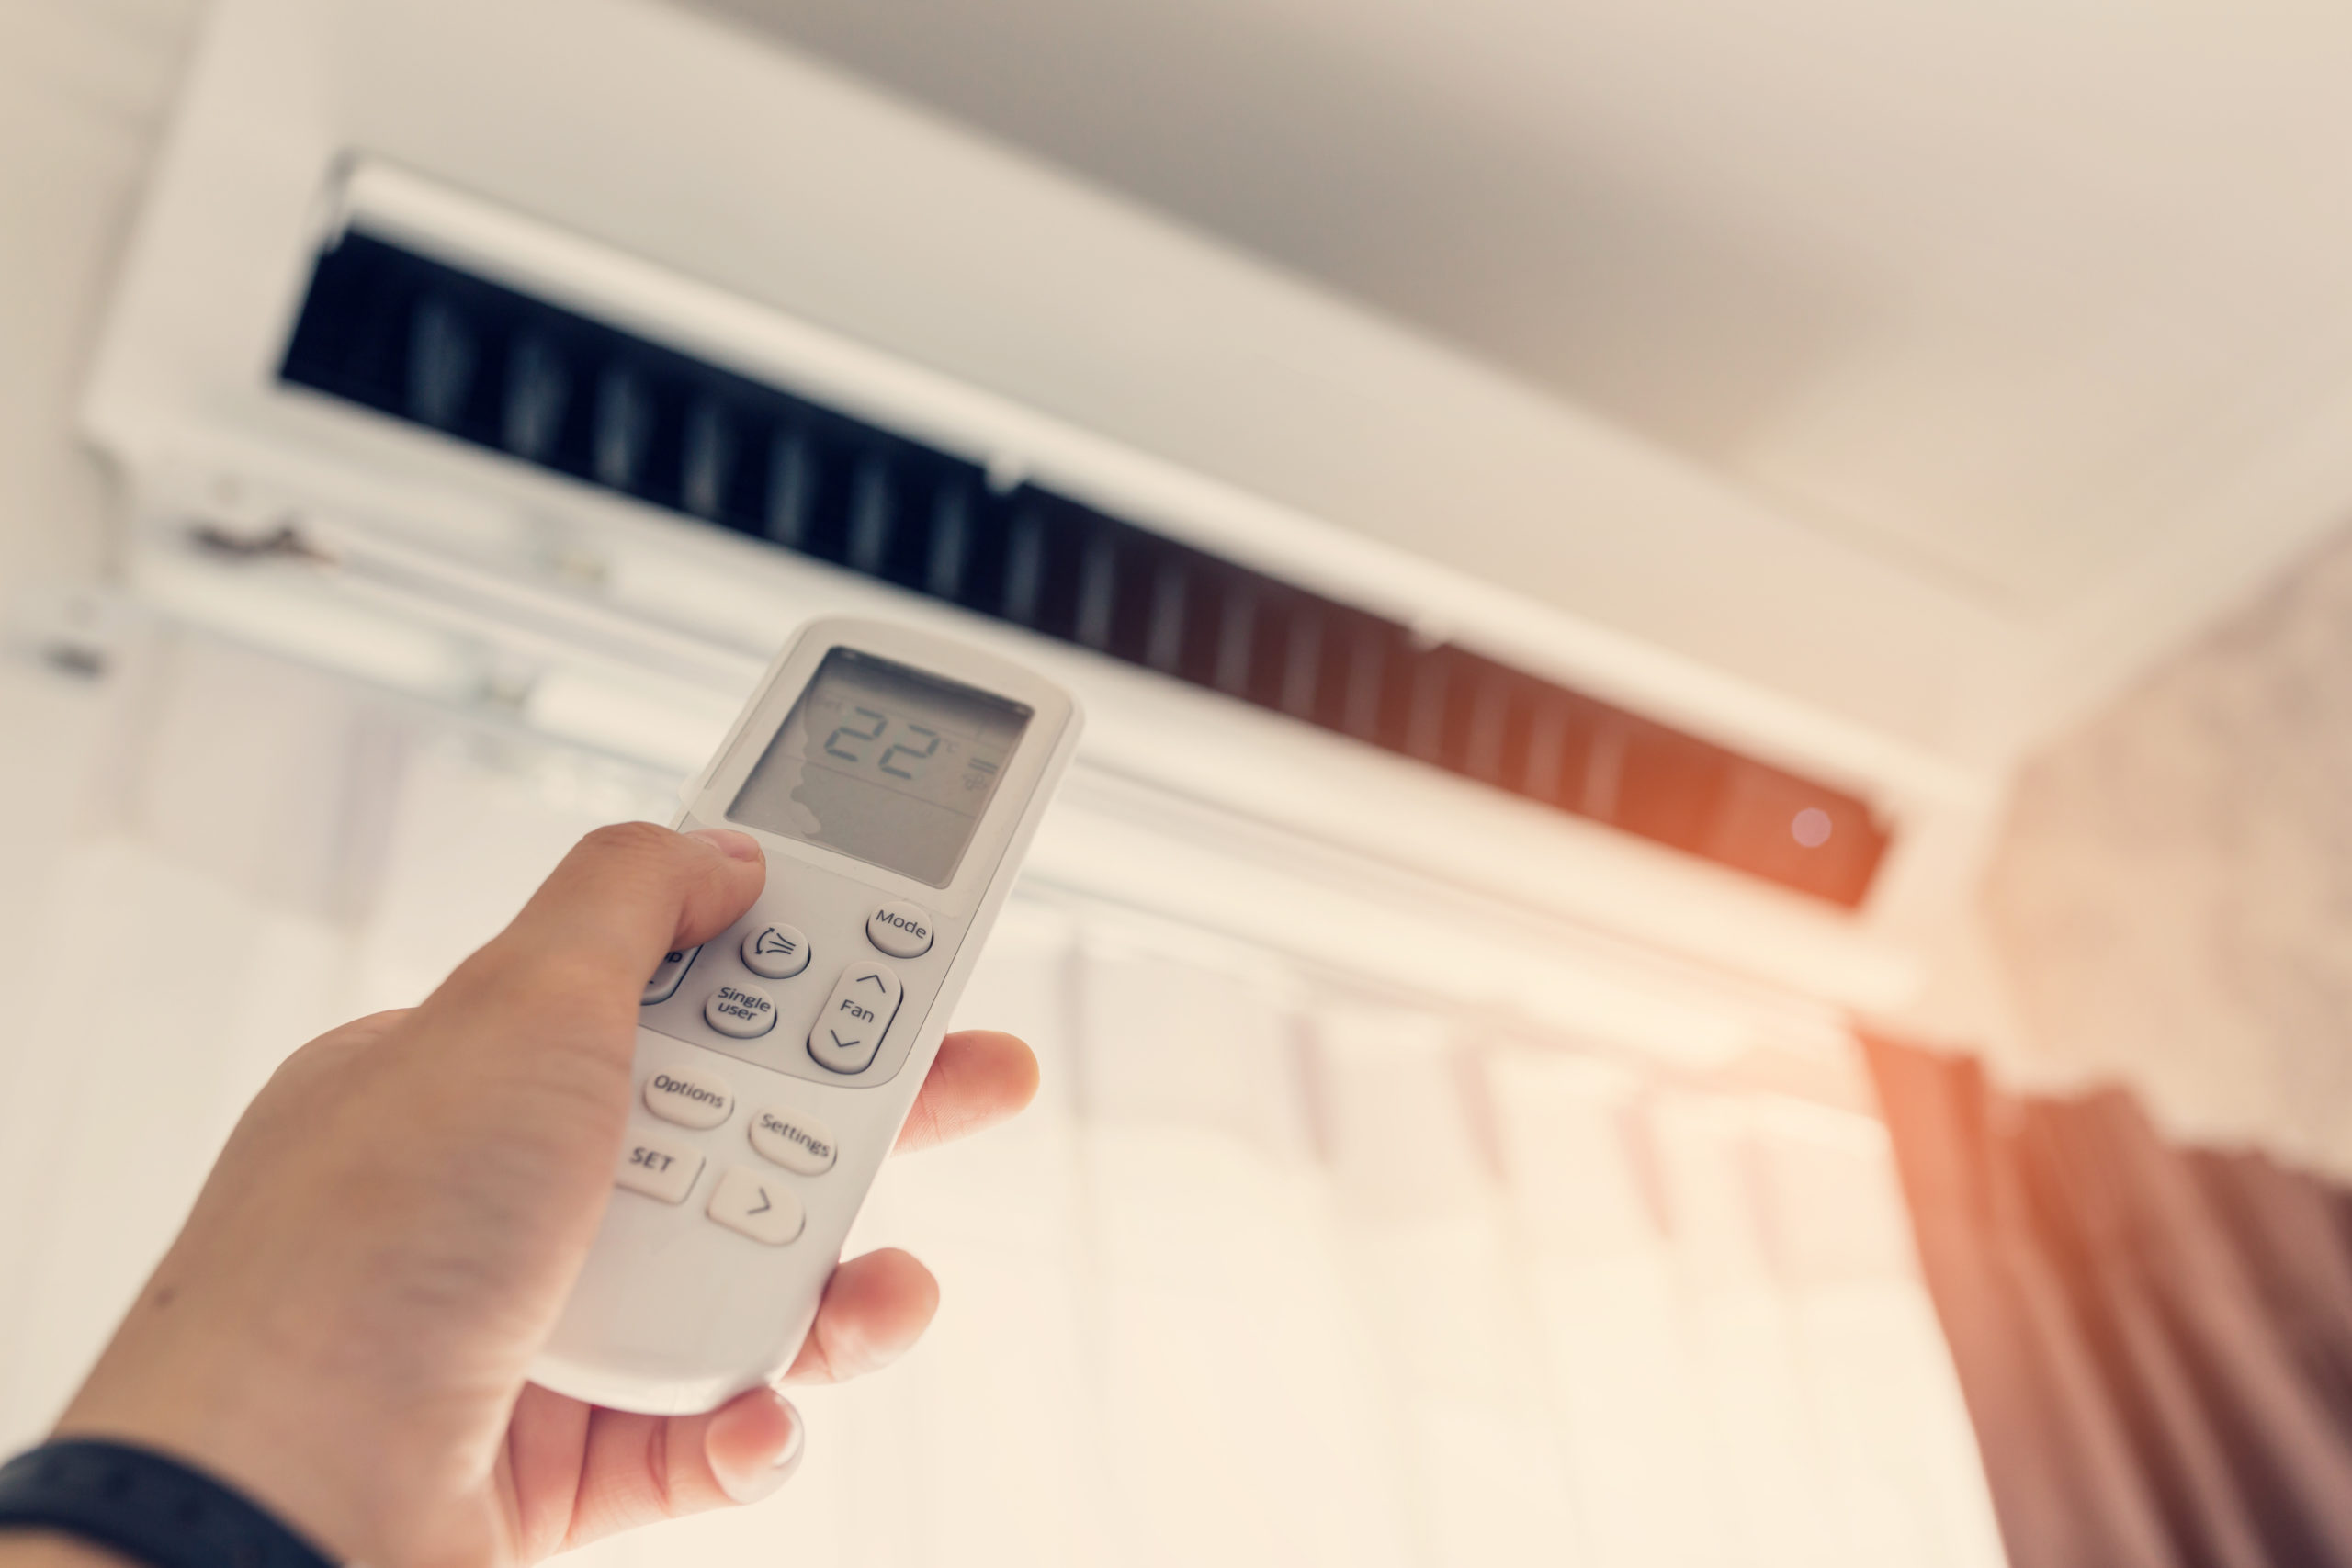 ¿Qué significa el botón «Cool» en el control del aire acondicionado?